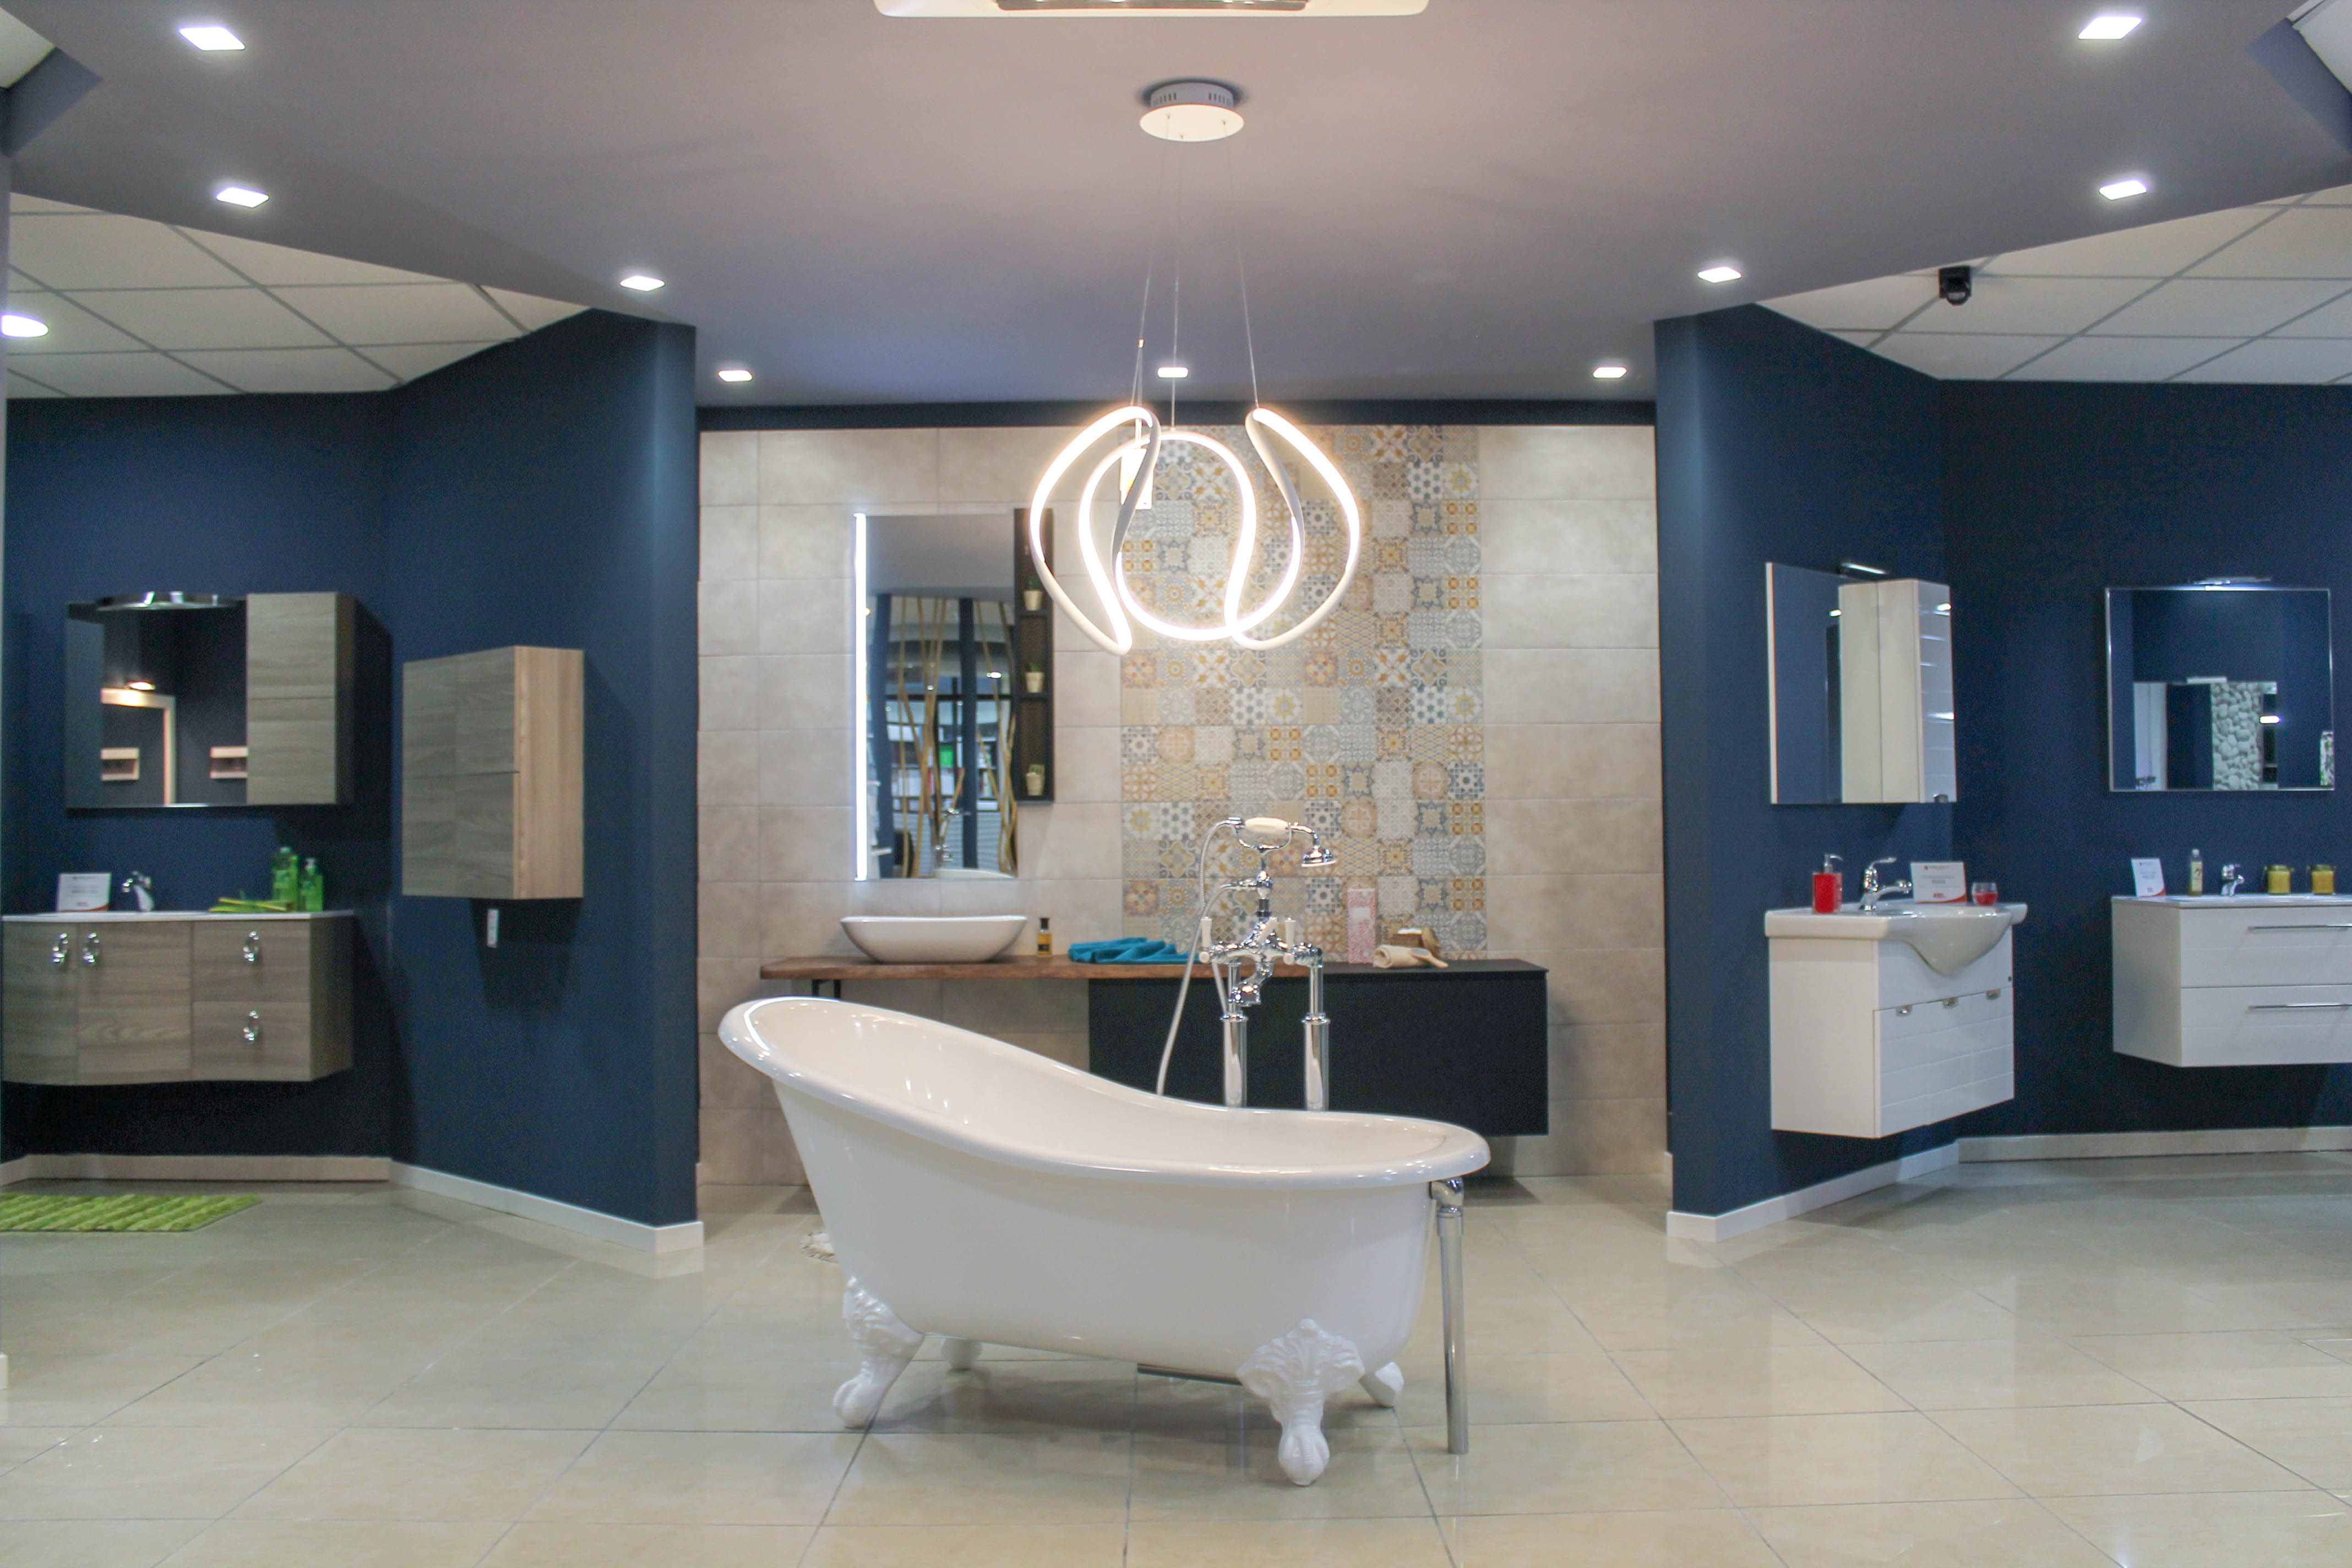 Mobili Sparaco: rinnovo arredo bagno e introduzione vasche da bagno Victoria + Albert Baths